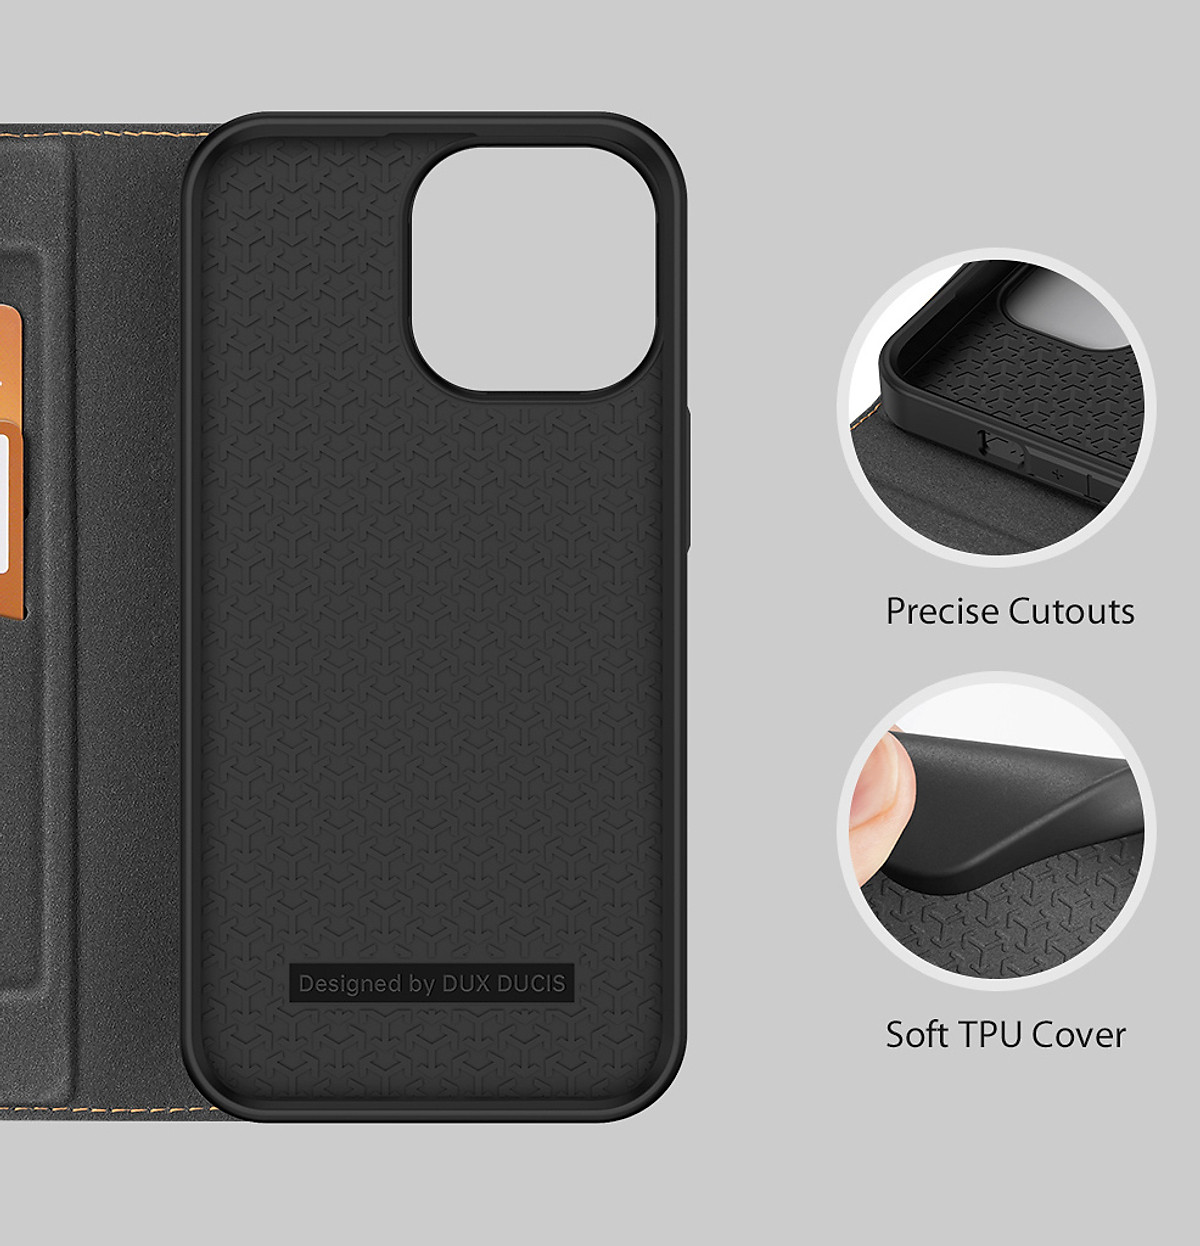 Bao da cho iPhone 14 Pro Max hiệu Dux Ducis Skin Wallet Card Chống sốc - Hàng nhập khẩu